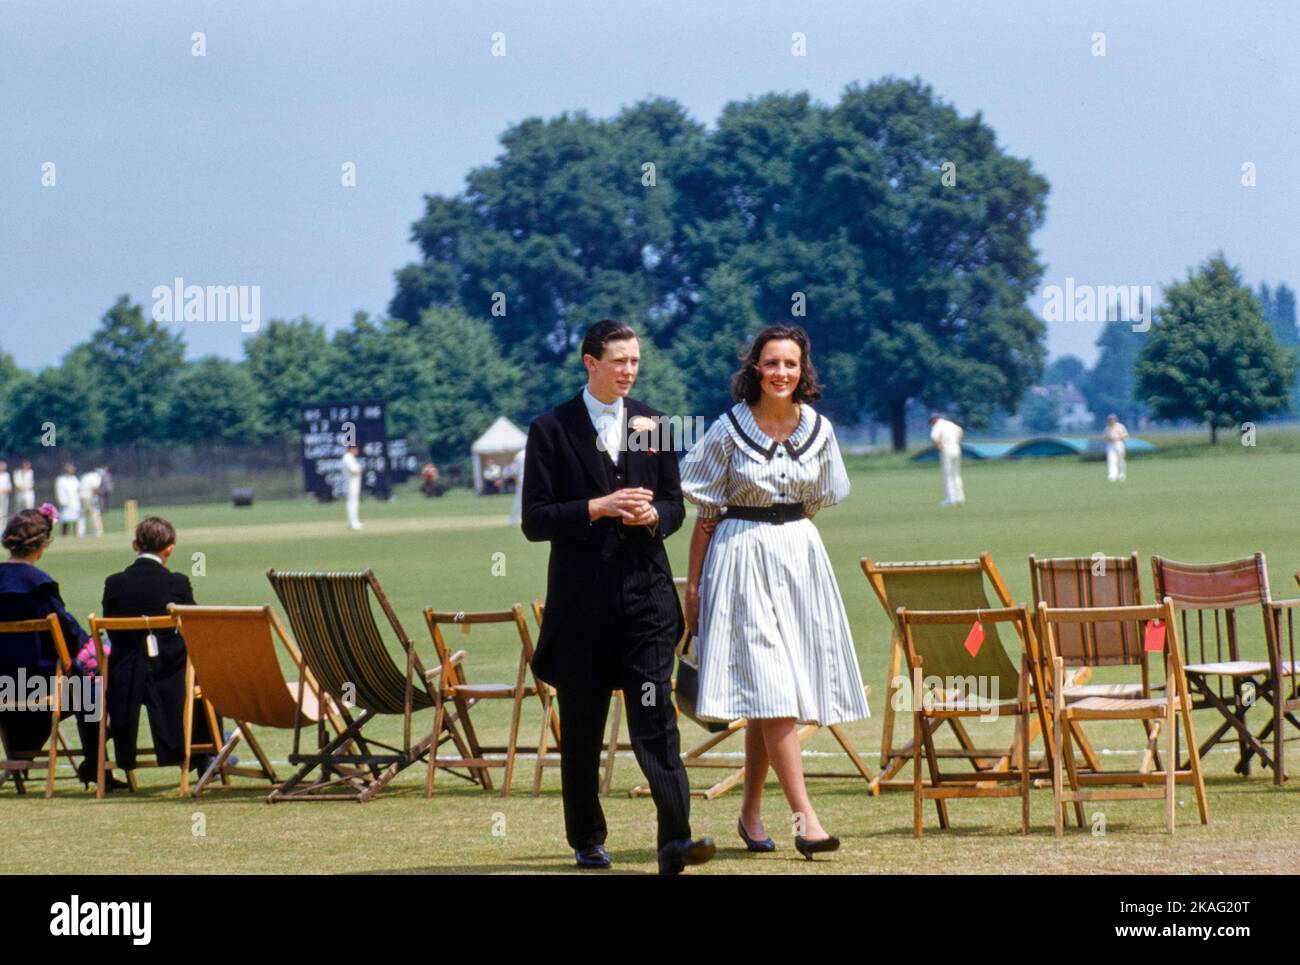 Teen Boy and Teen Girl participant au match de cricket, événement « quatrième de juin », Eton College, Eton, Berkshire, Angleterre, Royaume-Uni, collection Toni Frissell, 4 juin 1959 Banque D'Images